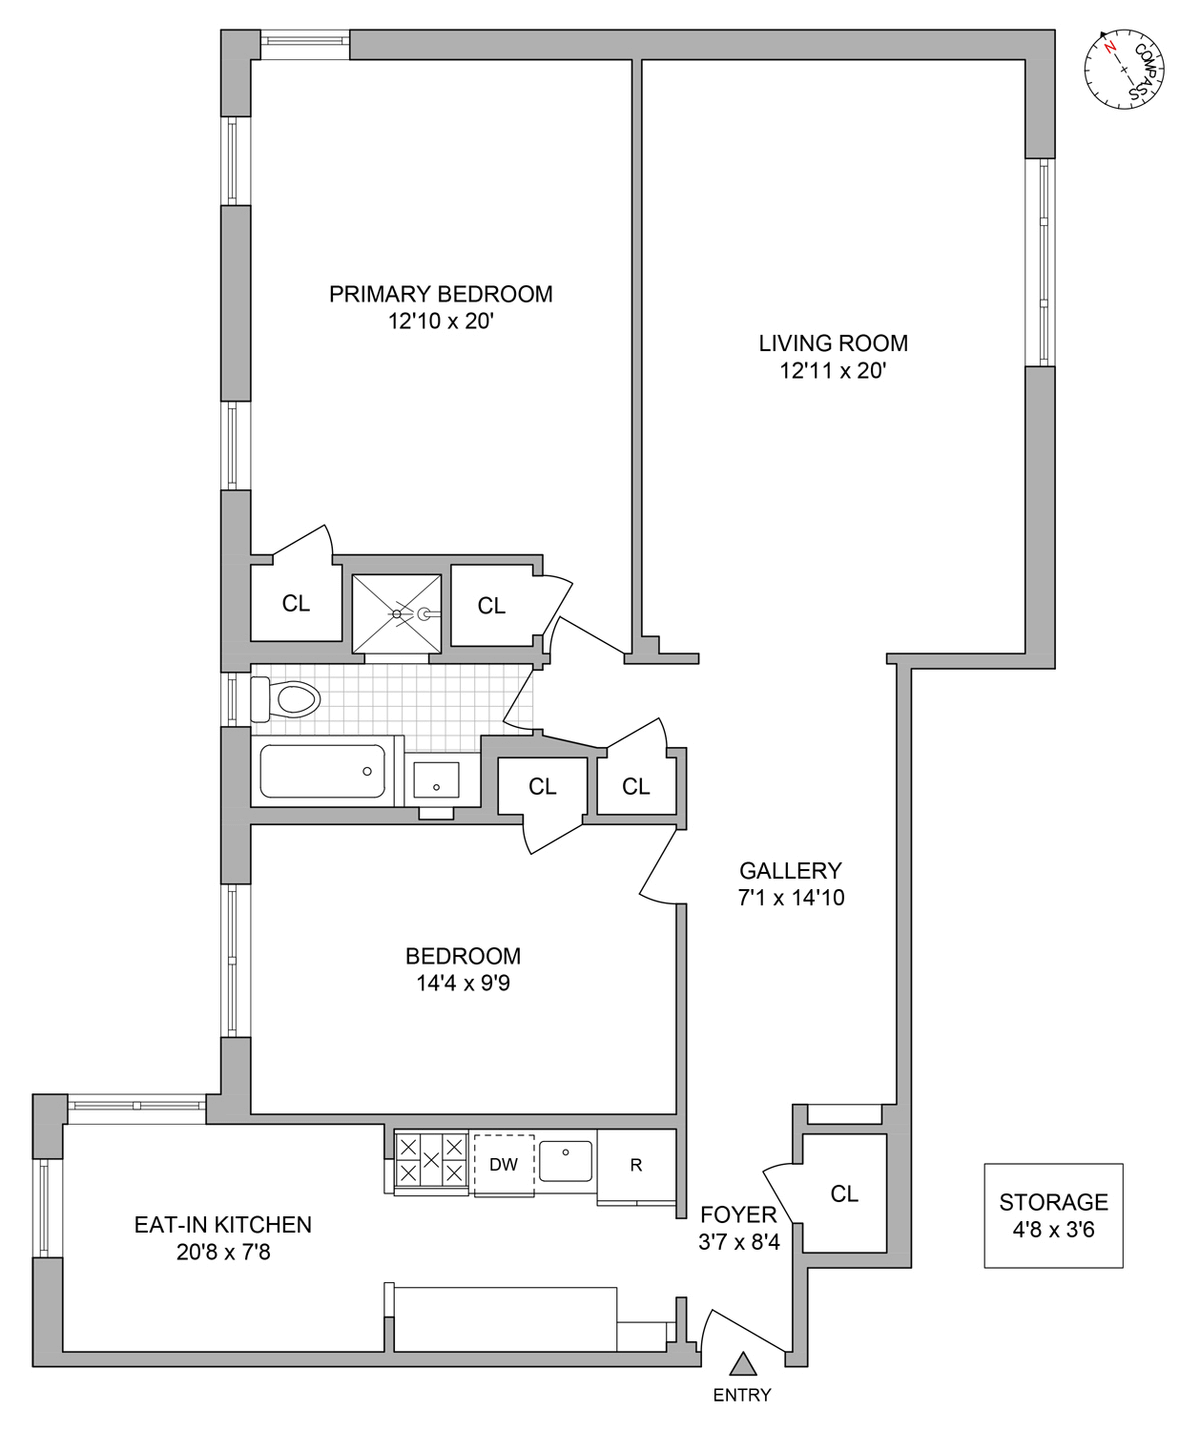 floorplan of unit d7 44 prospect park west